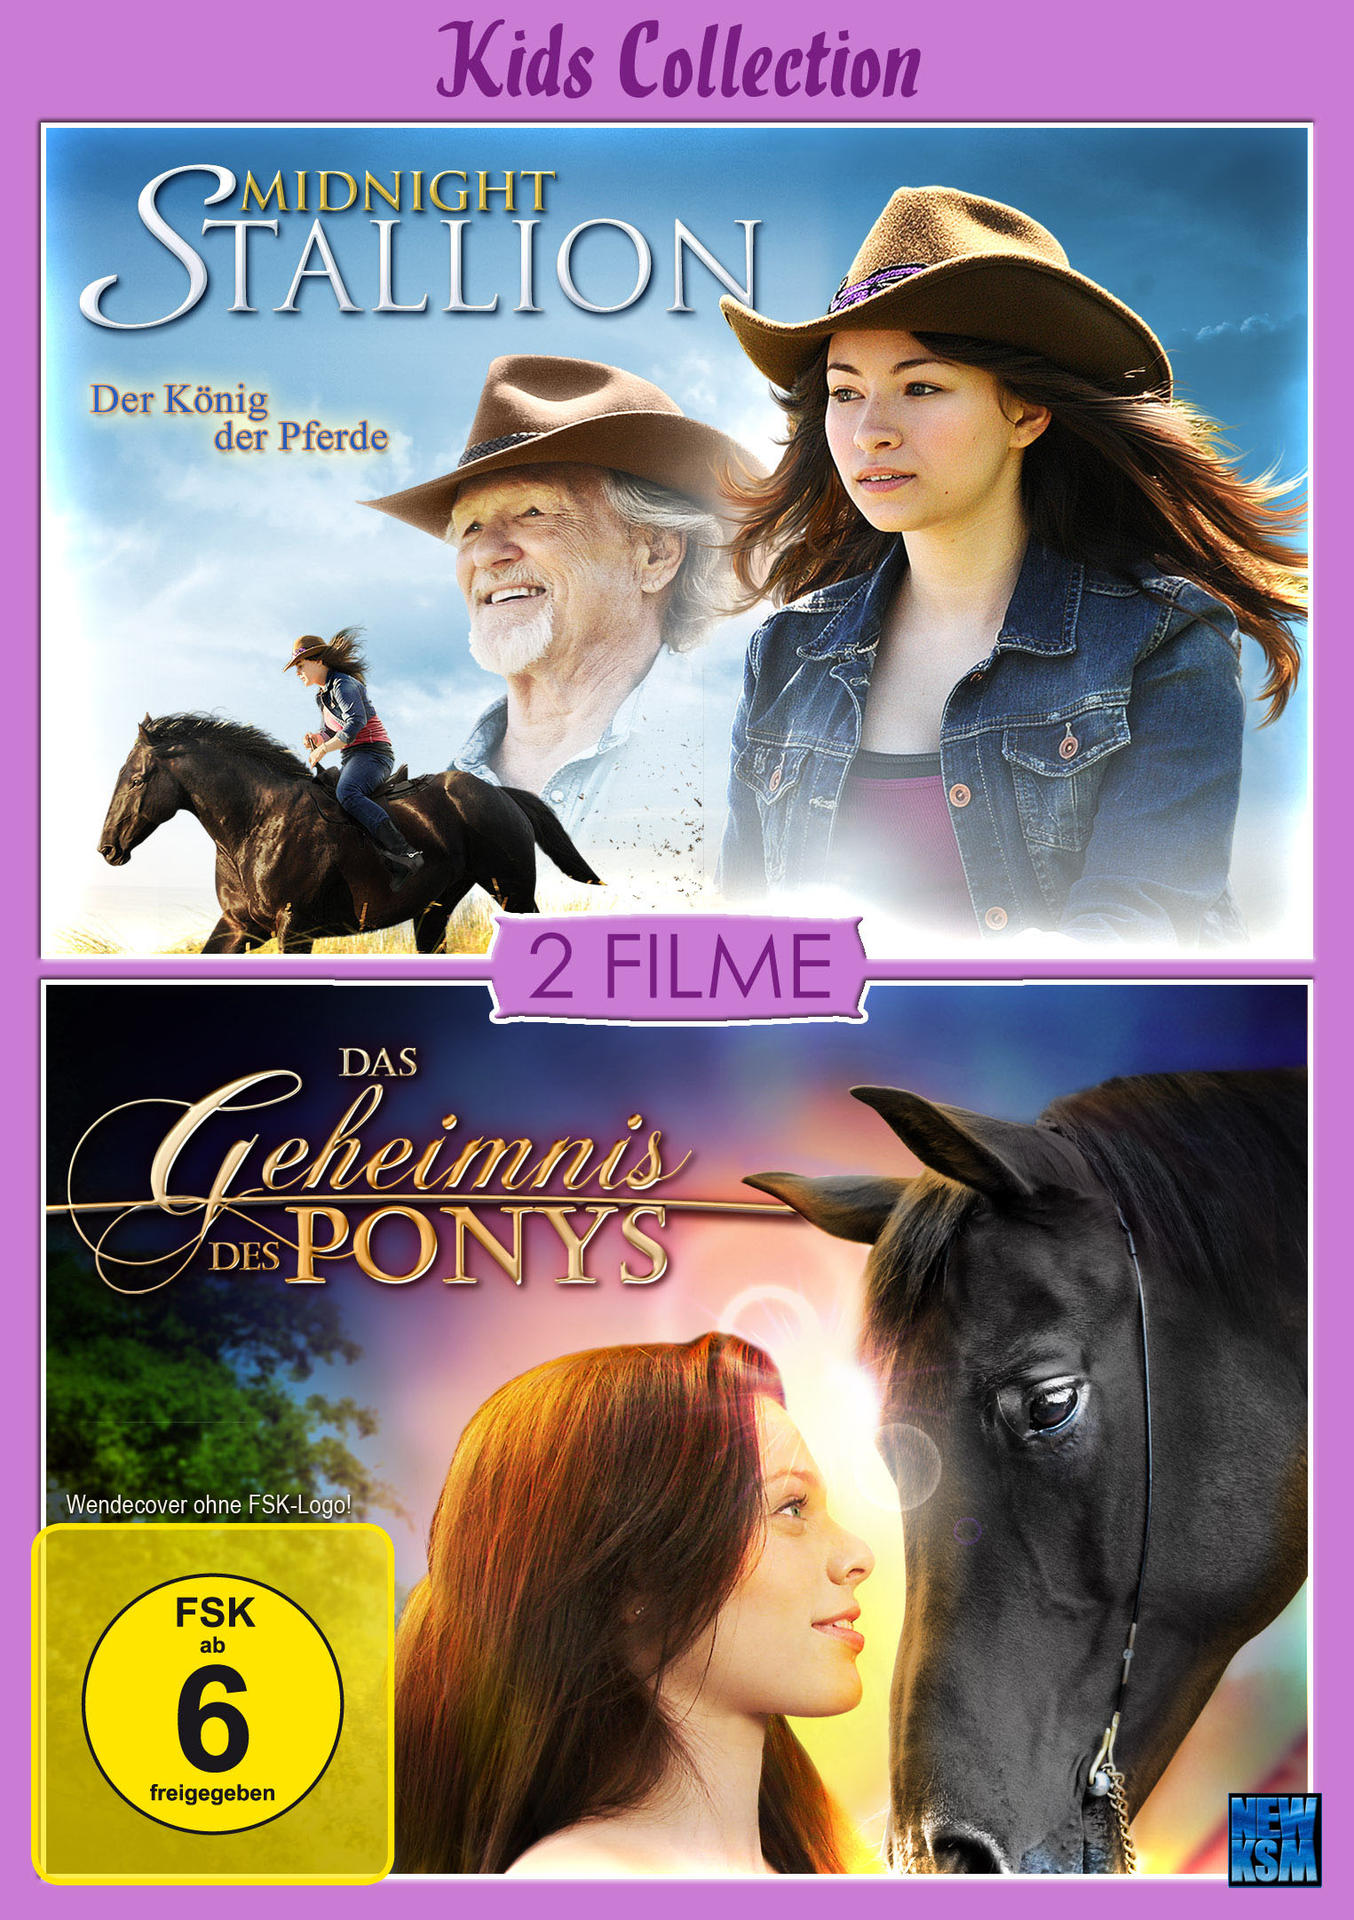 Kids Collection - Das Geheimnis DVD + Stallion Ponys des Midnight